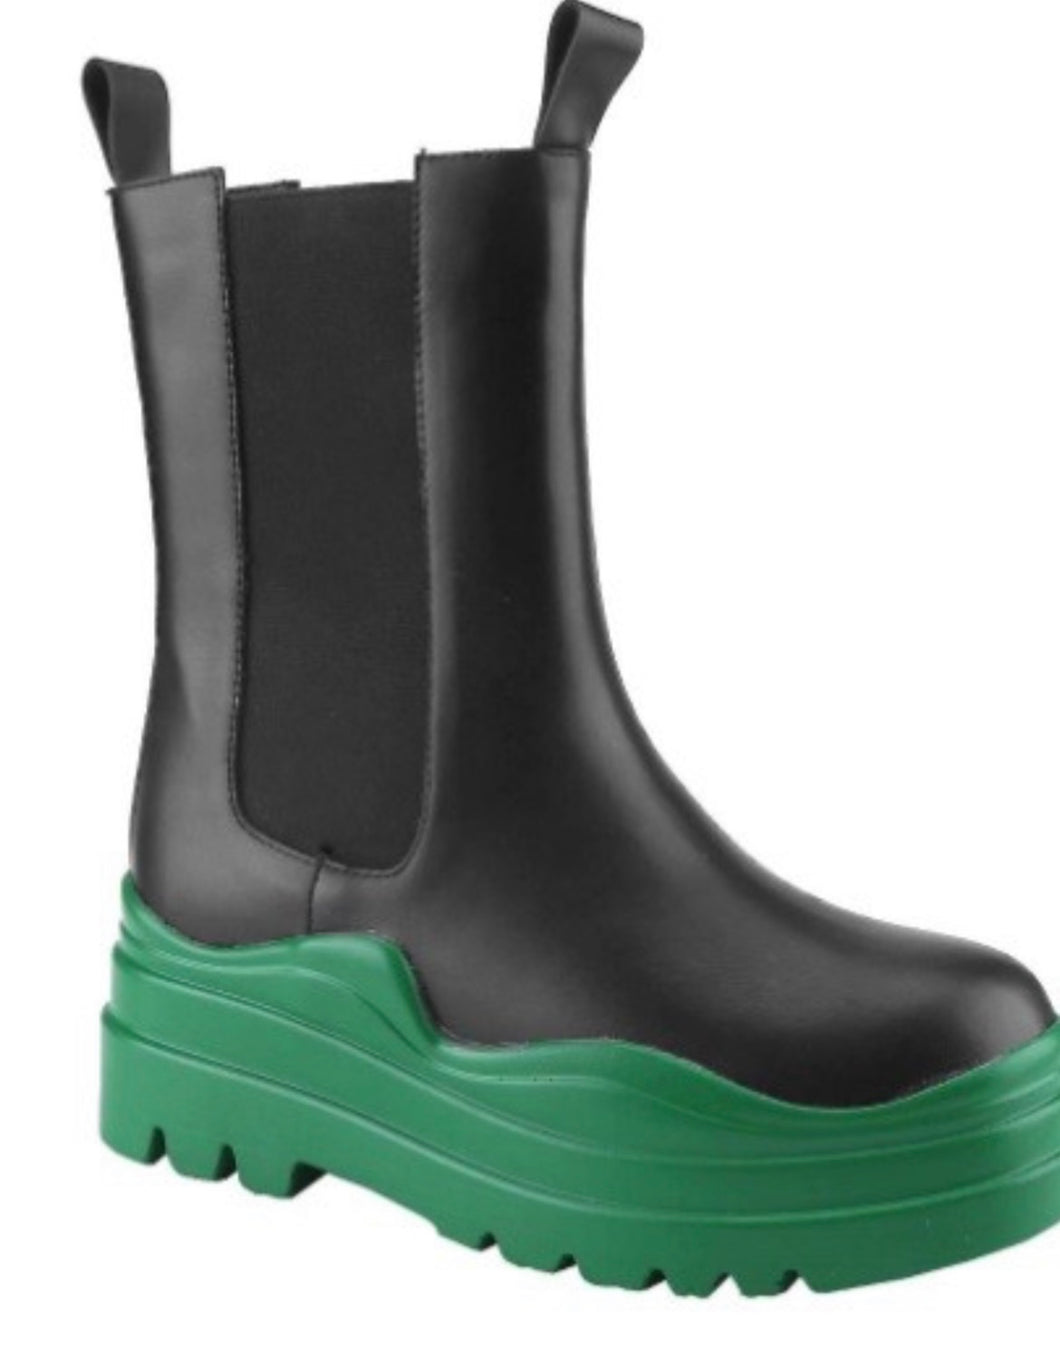 Green rain boot